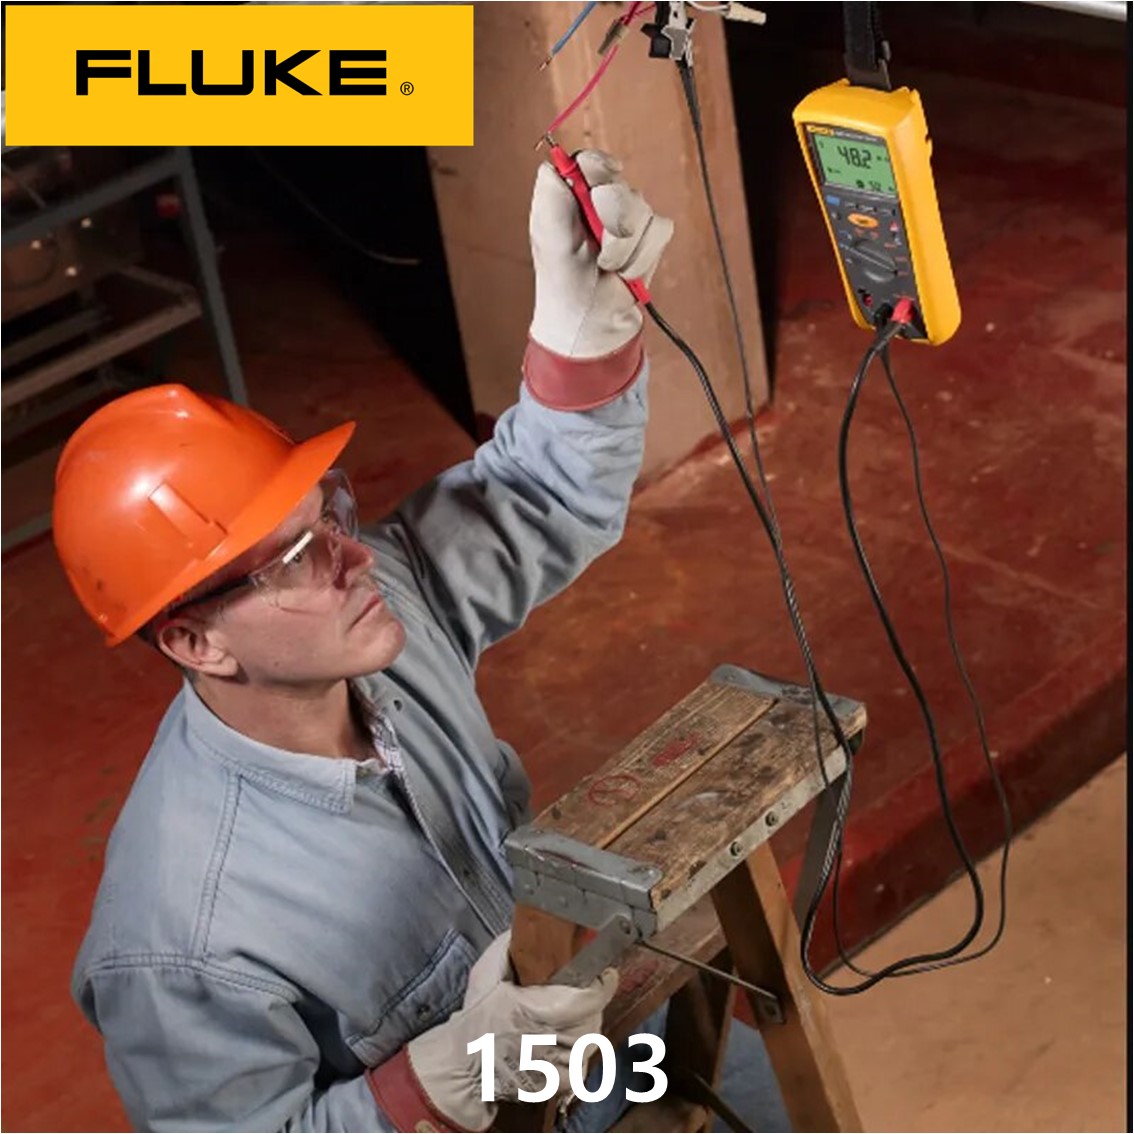 [ FLUKE 1503 ] 정품 플루크 절연저항계 1503, 절연시험기, 절연저항테스터